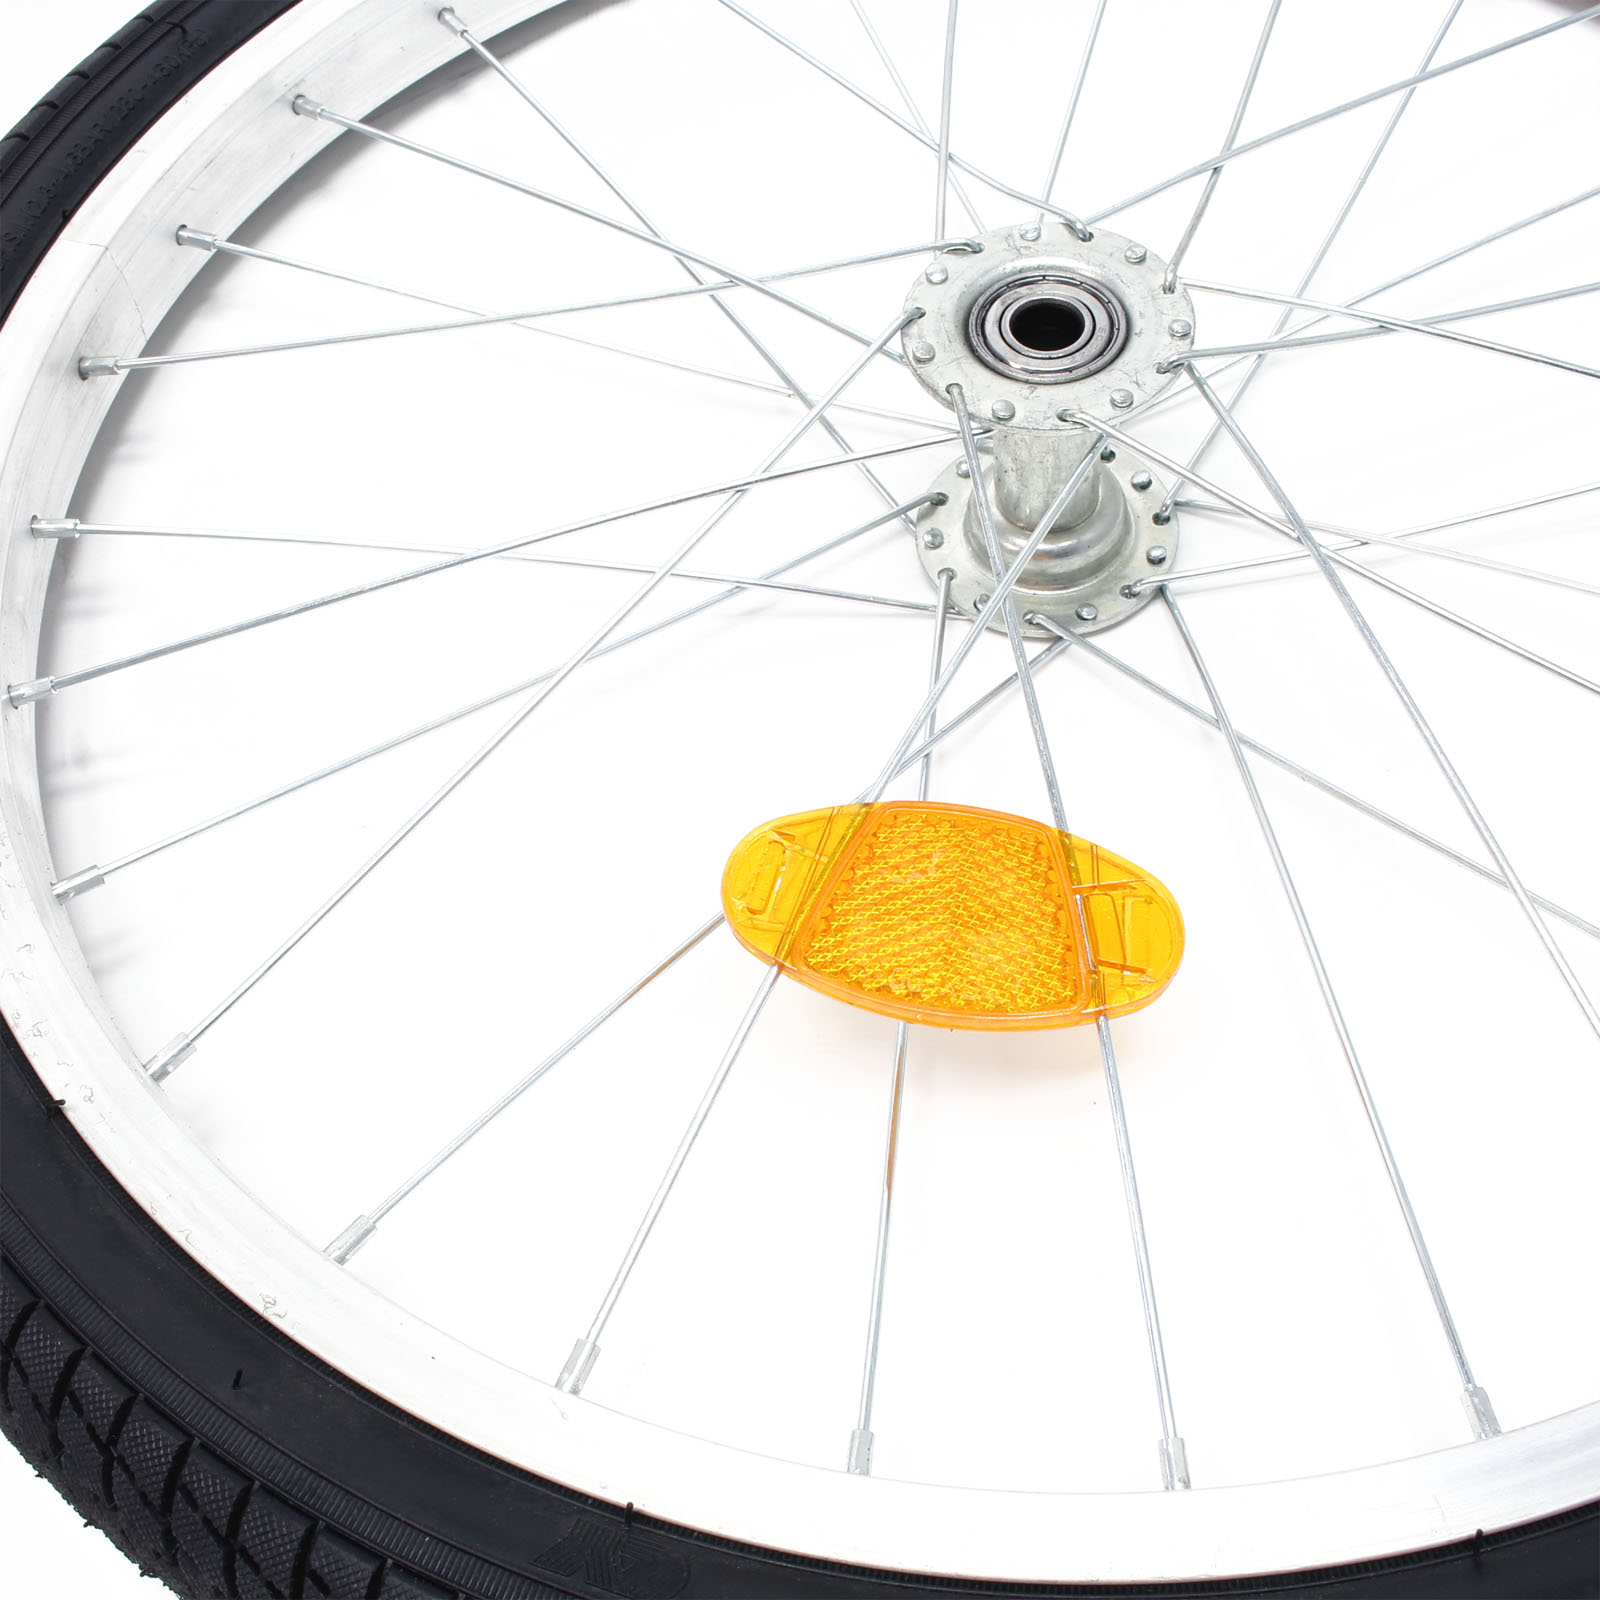 Support de roue pour la fabrication d'une remorque vélo